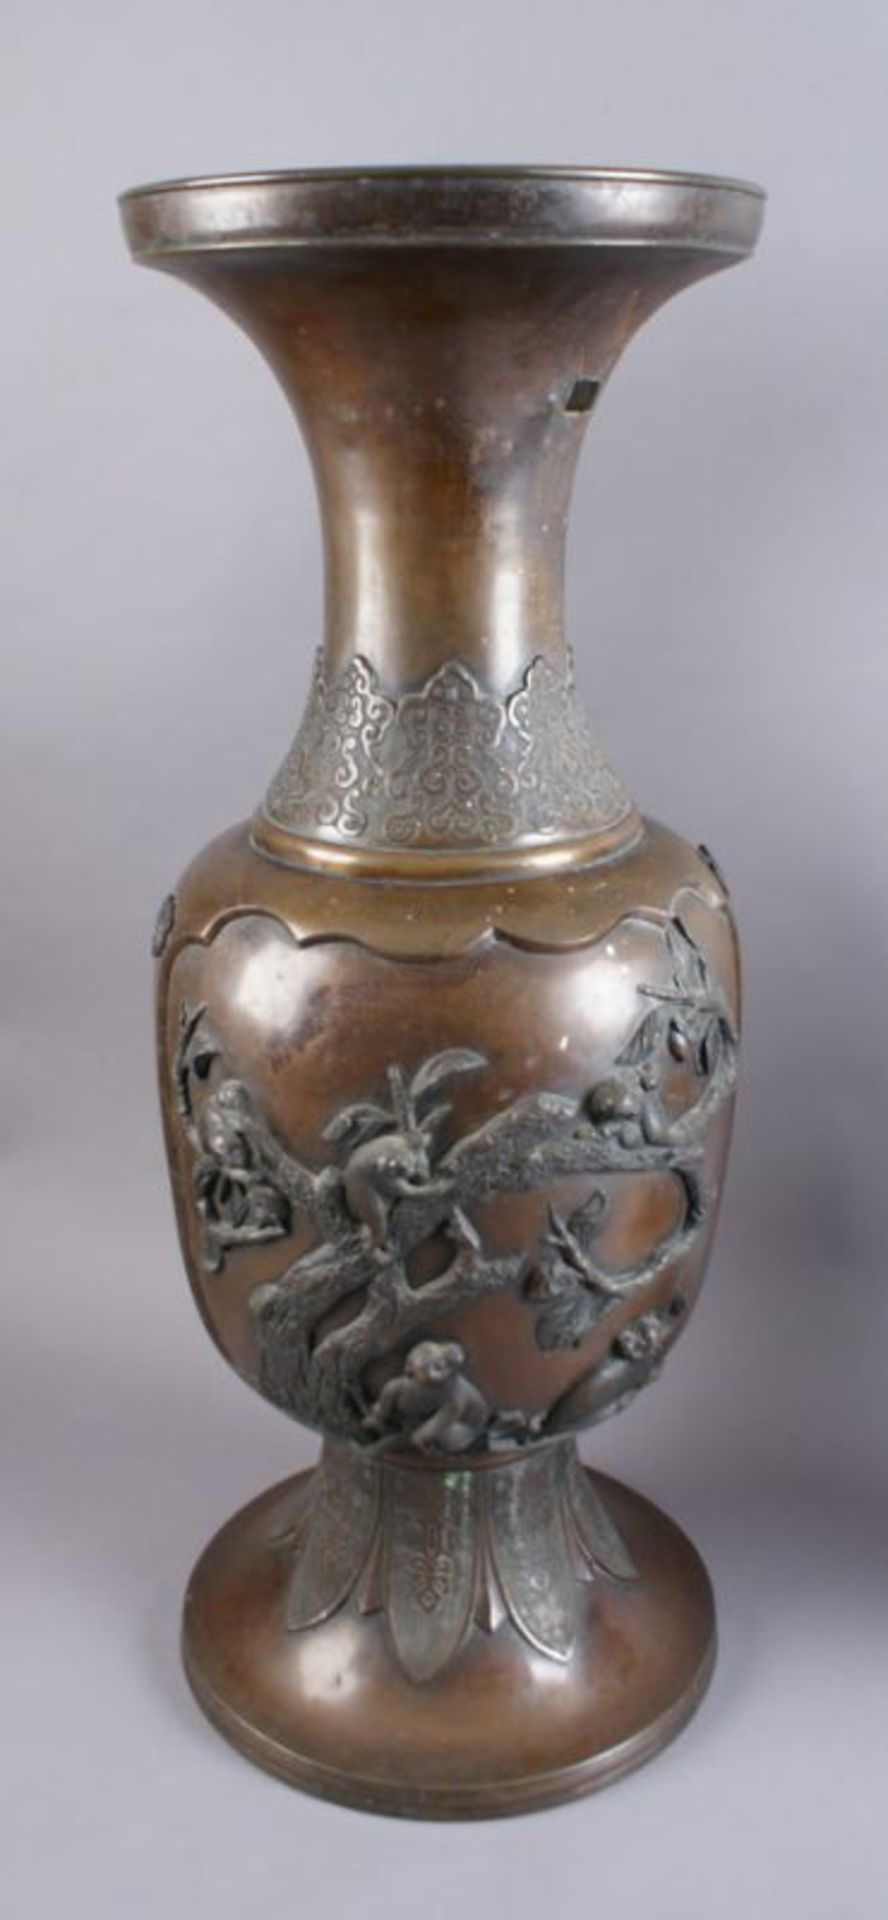 PAAR BRONZE VASEN Japan, 19. JH, zwei grosse Vasen mit Reliefdekor, Darstellung von spielenden Affen - Bild 8 aus 11